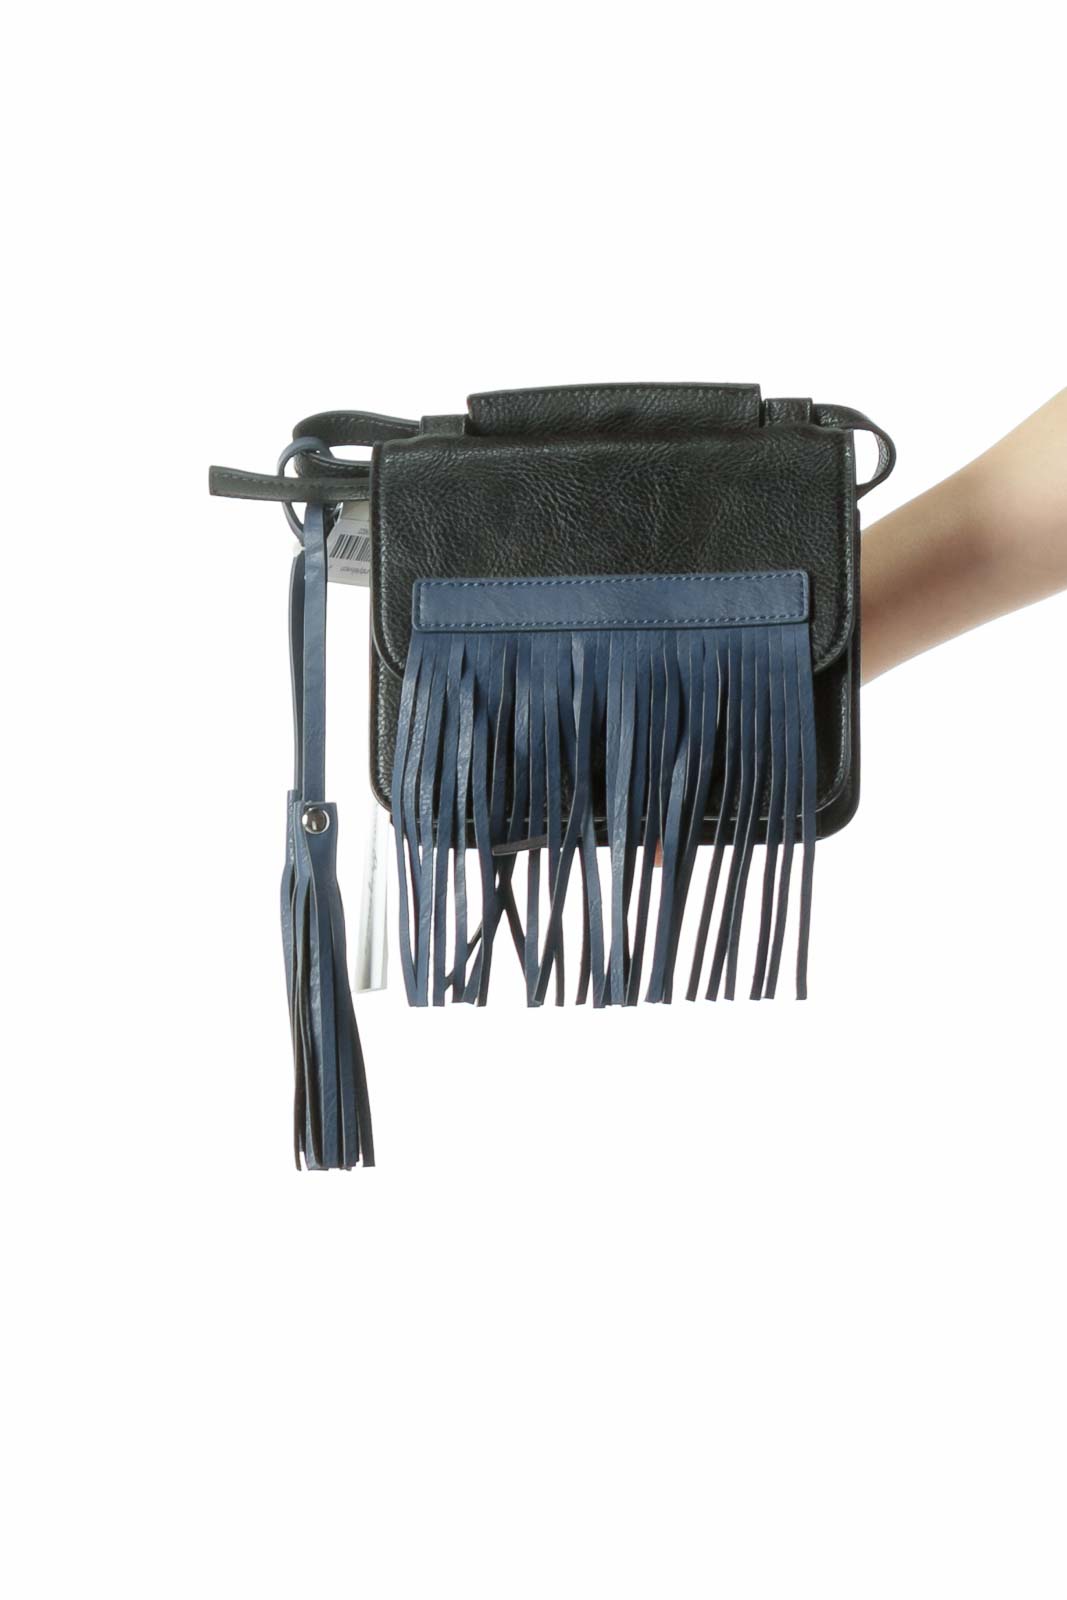 Black Blue Fringe Crossbody Bag with Tassels Front